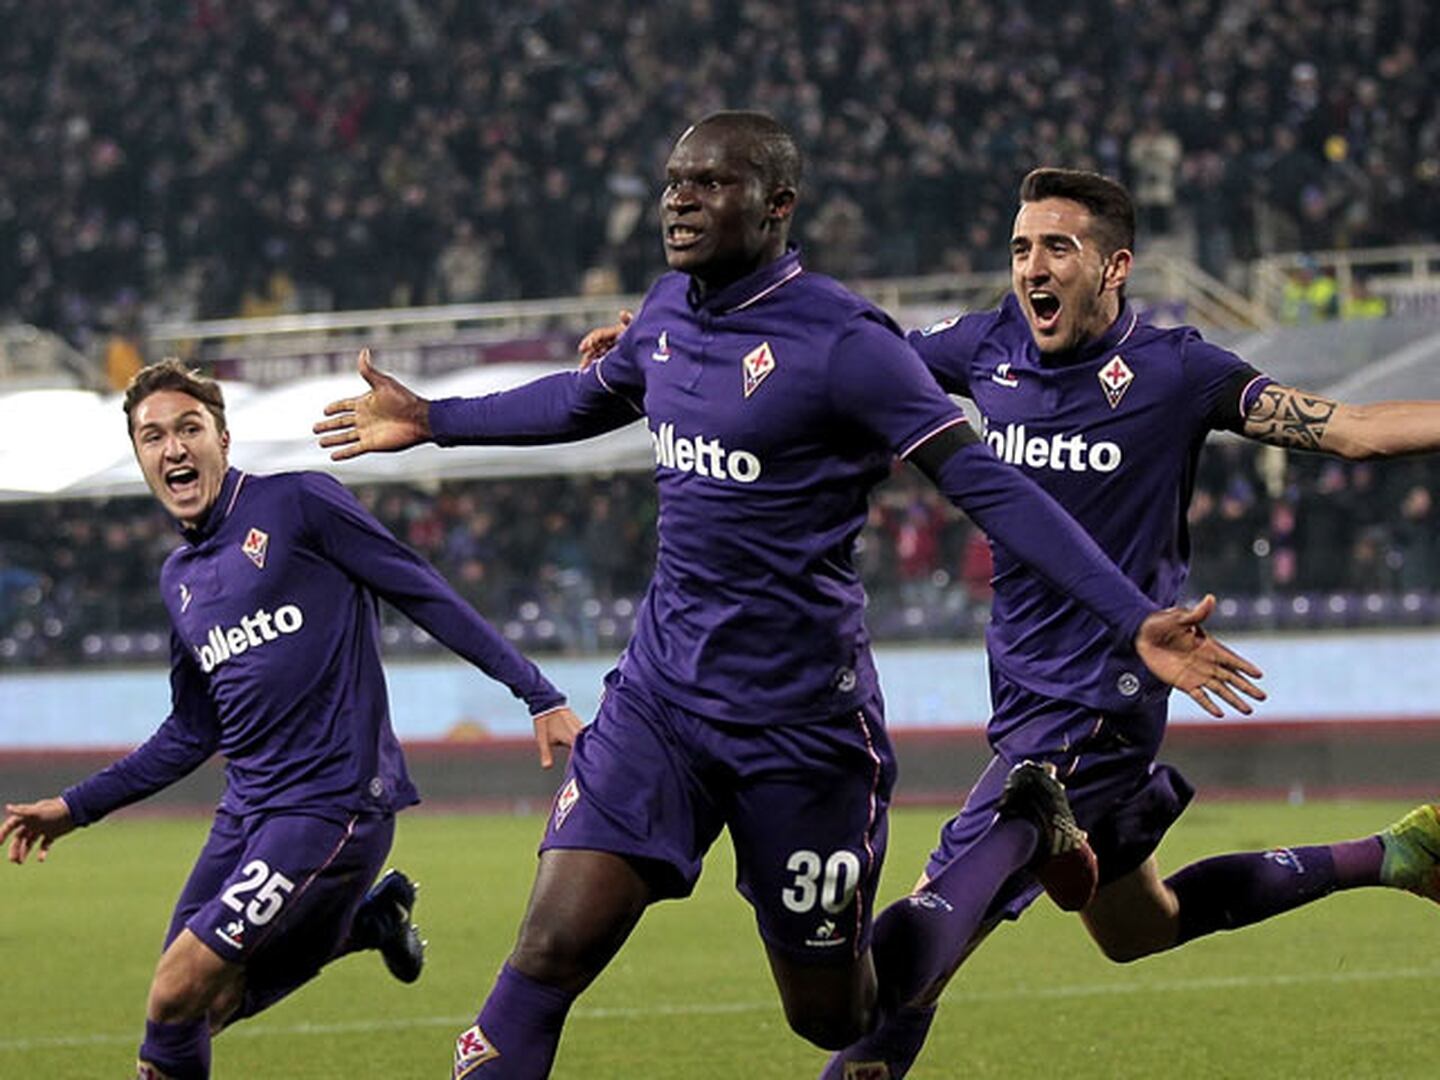 Fiorentina lo ganó en la última pelota y Palermo se complica